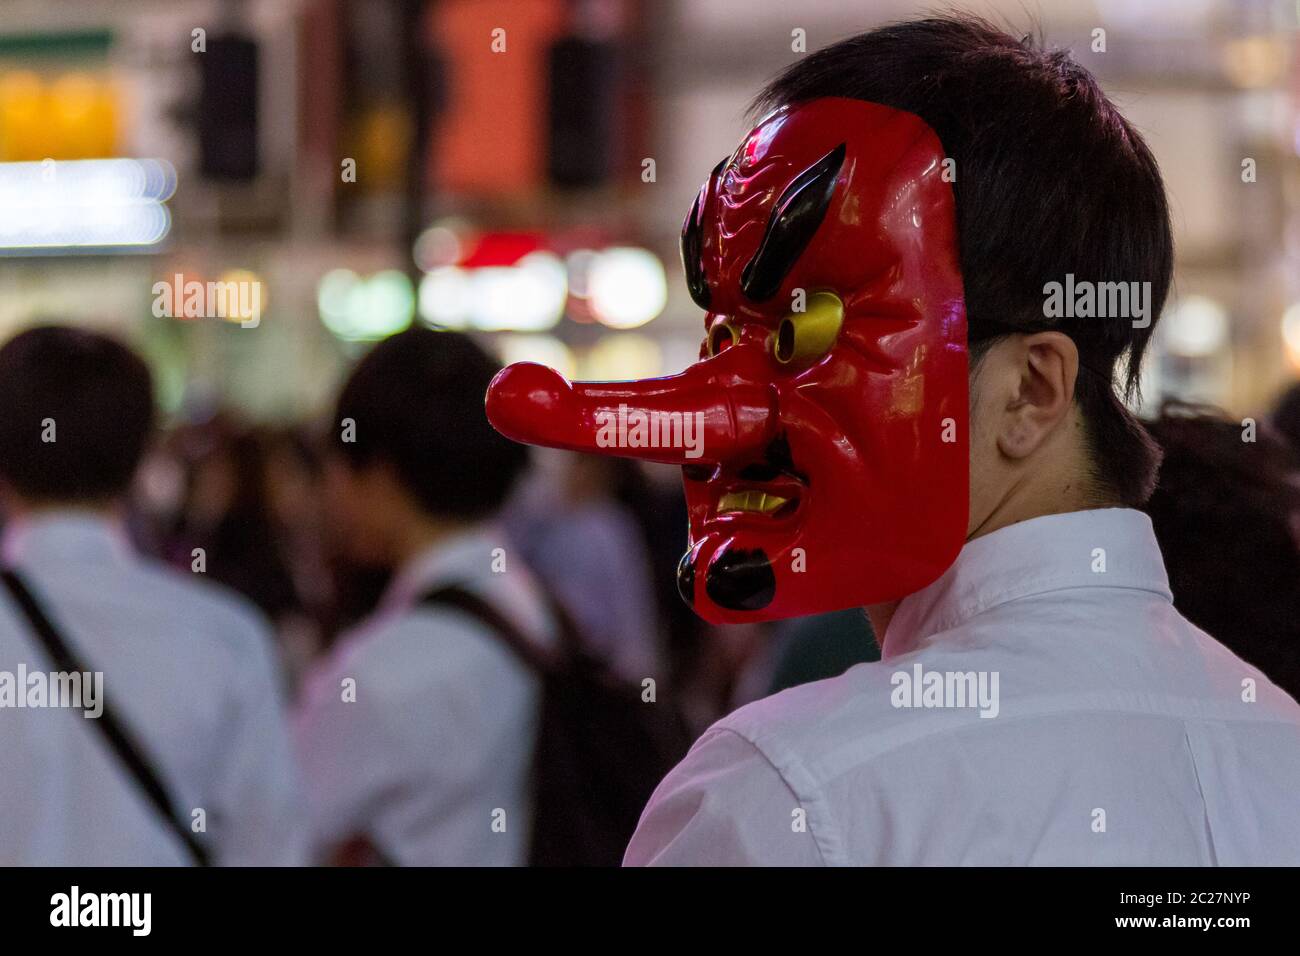 Ein junger Japaner trägt eine Tengu-Maske, als er Menschen für ein youtube-Video auf dem Hachiko Square, Shibuya, Tokio, Japan interviewt. Stockfoto